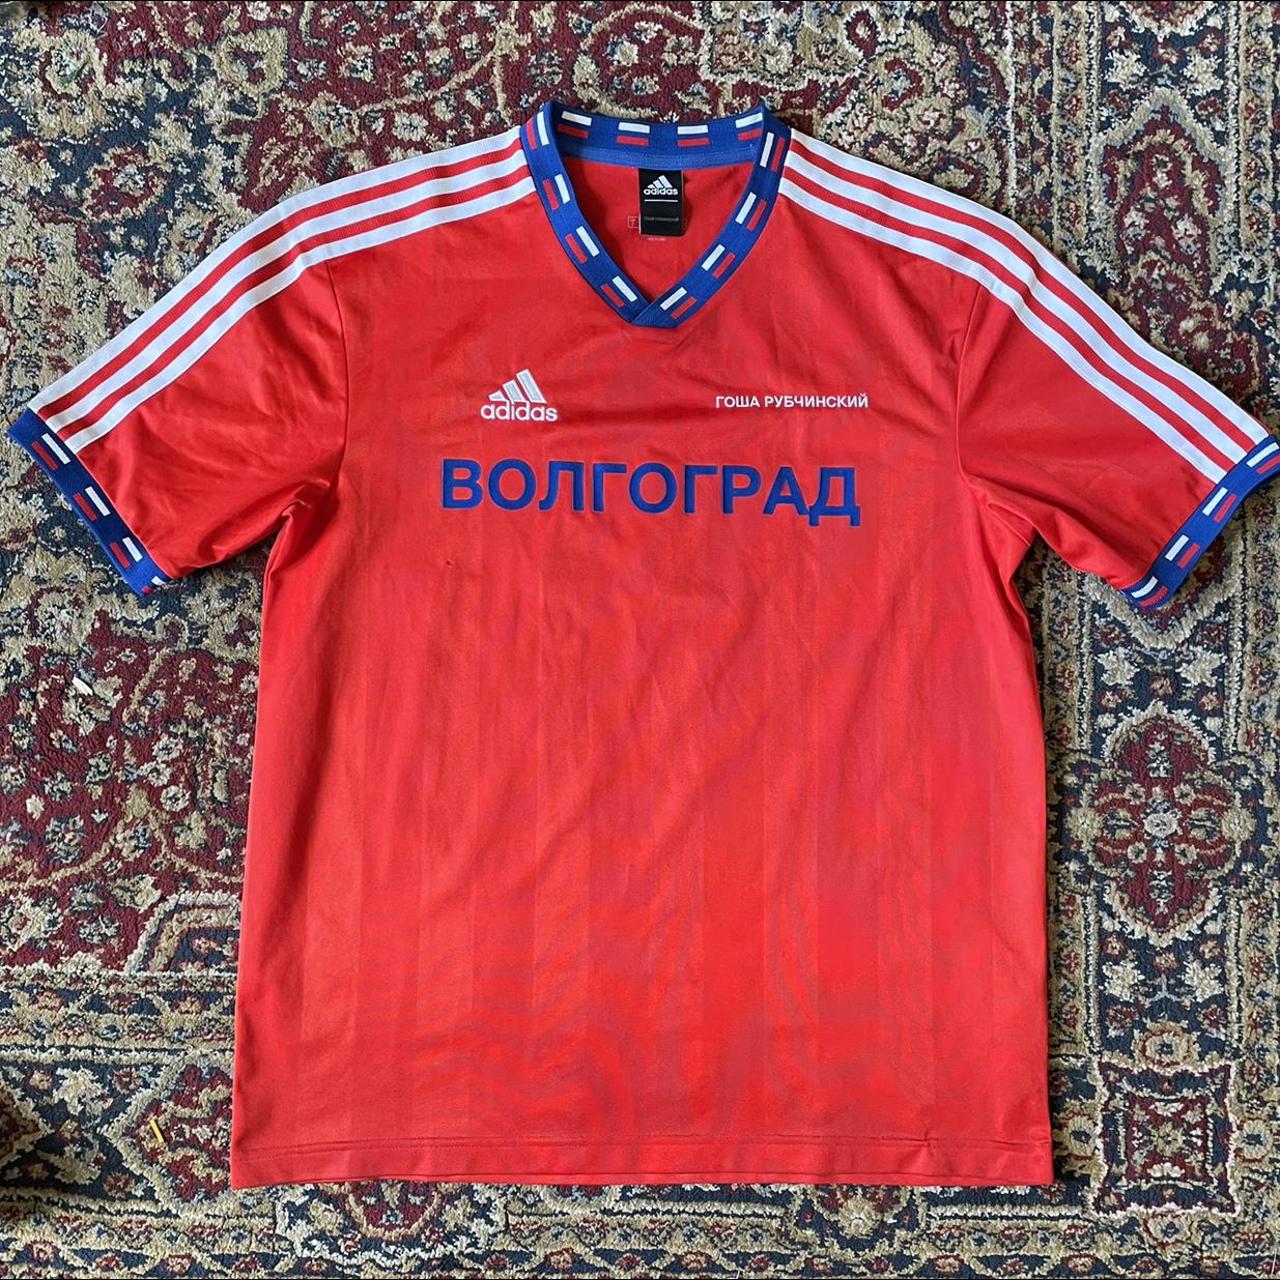 Product Image 1 - Gosha x Adidas football shirt,